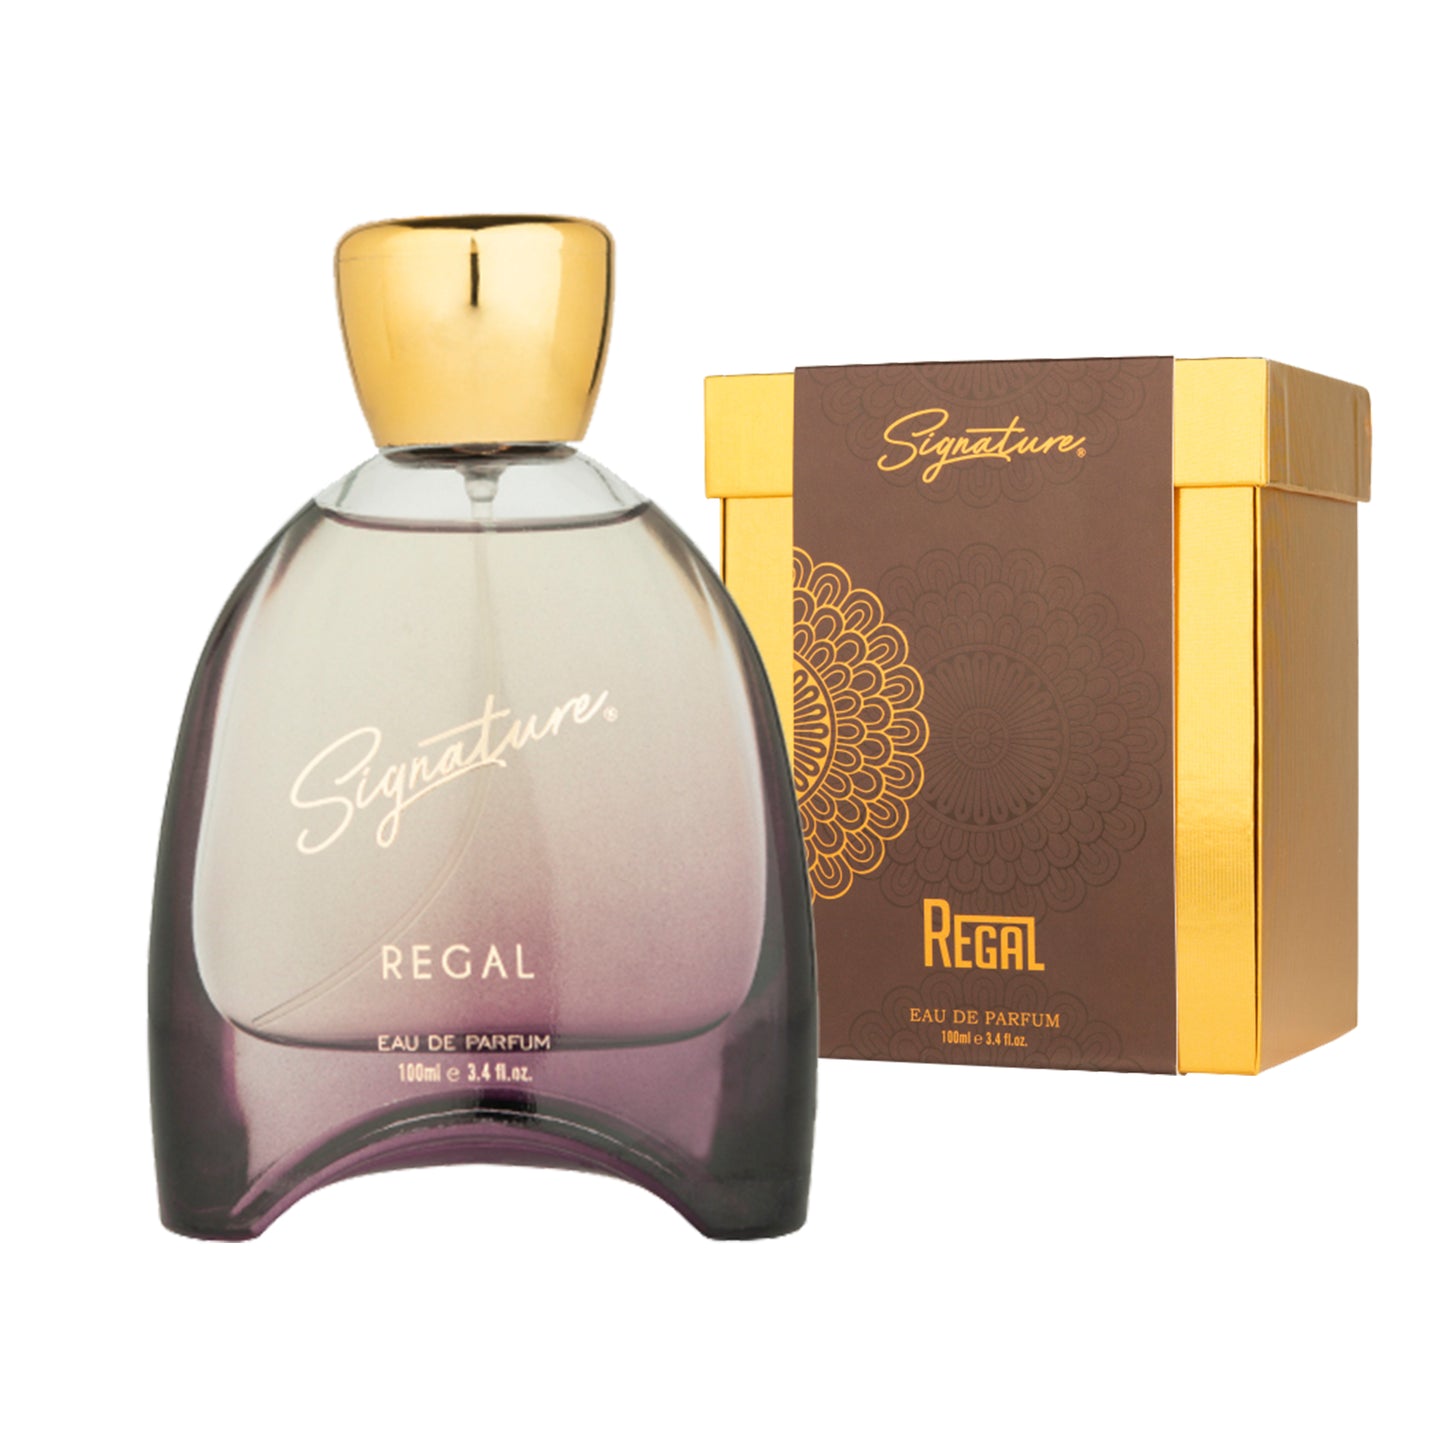 Signature Royal perfume- REGAL for Unisex